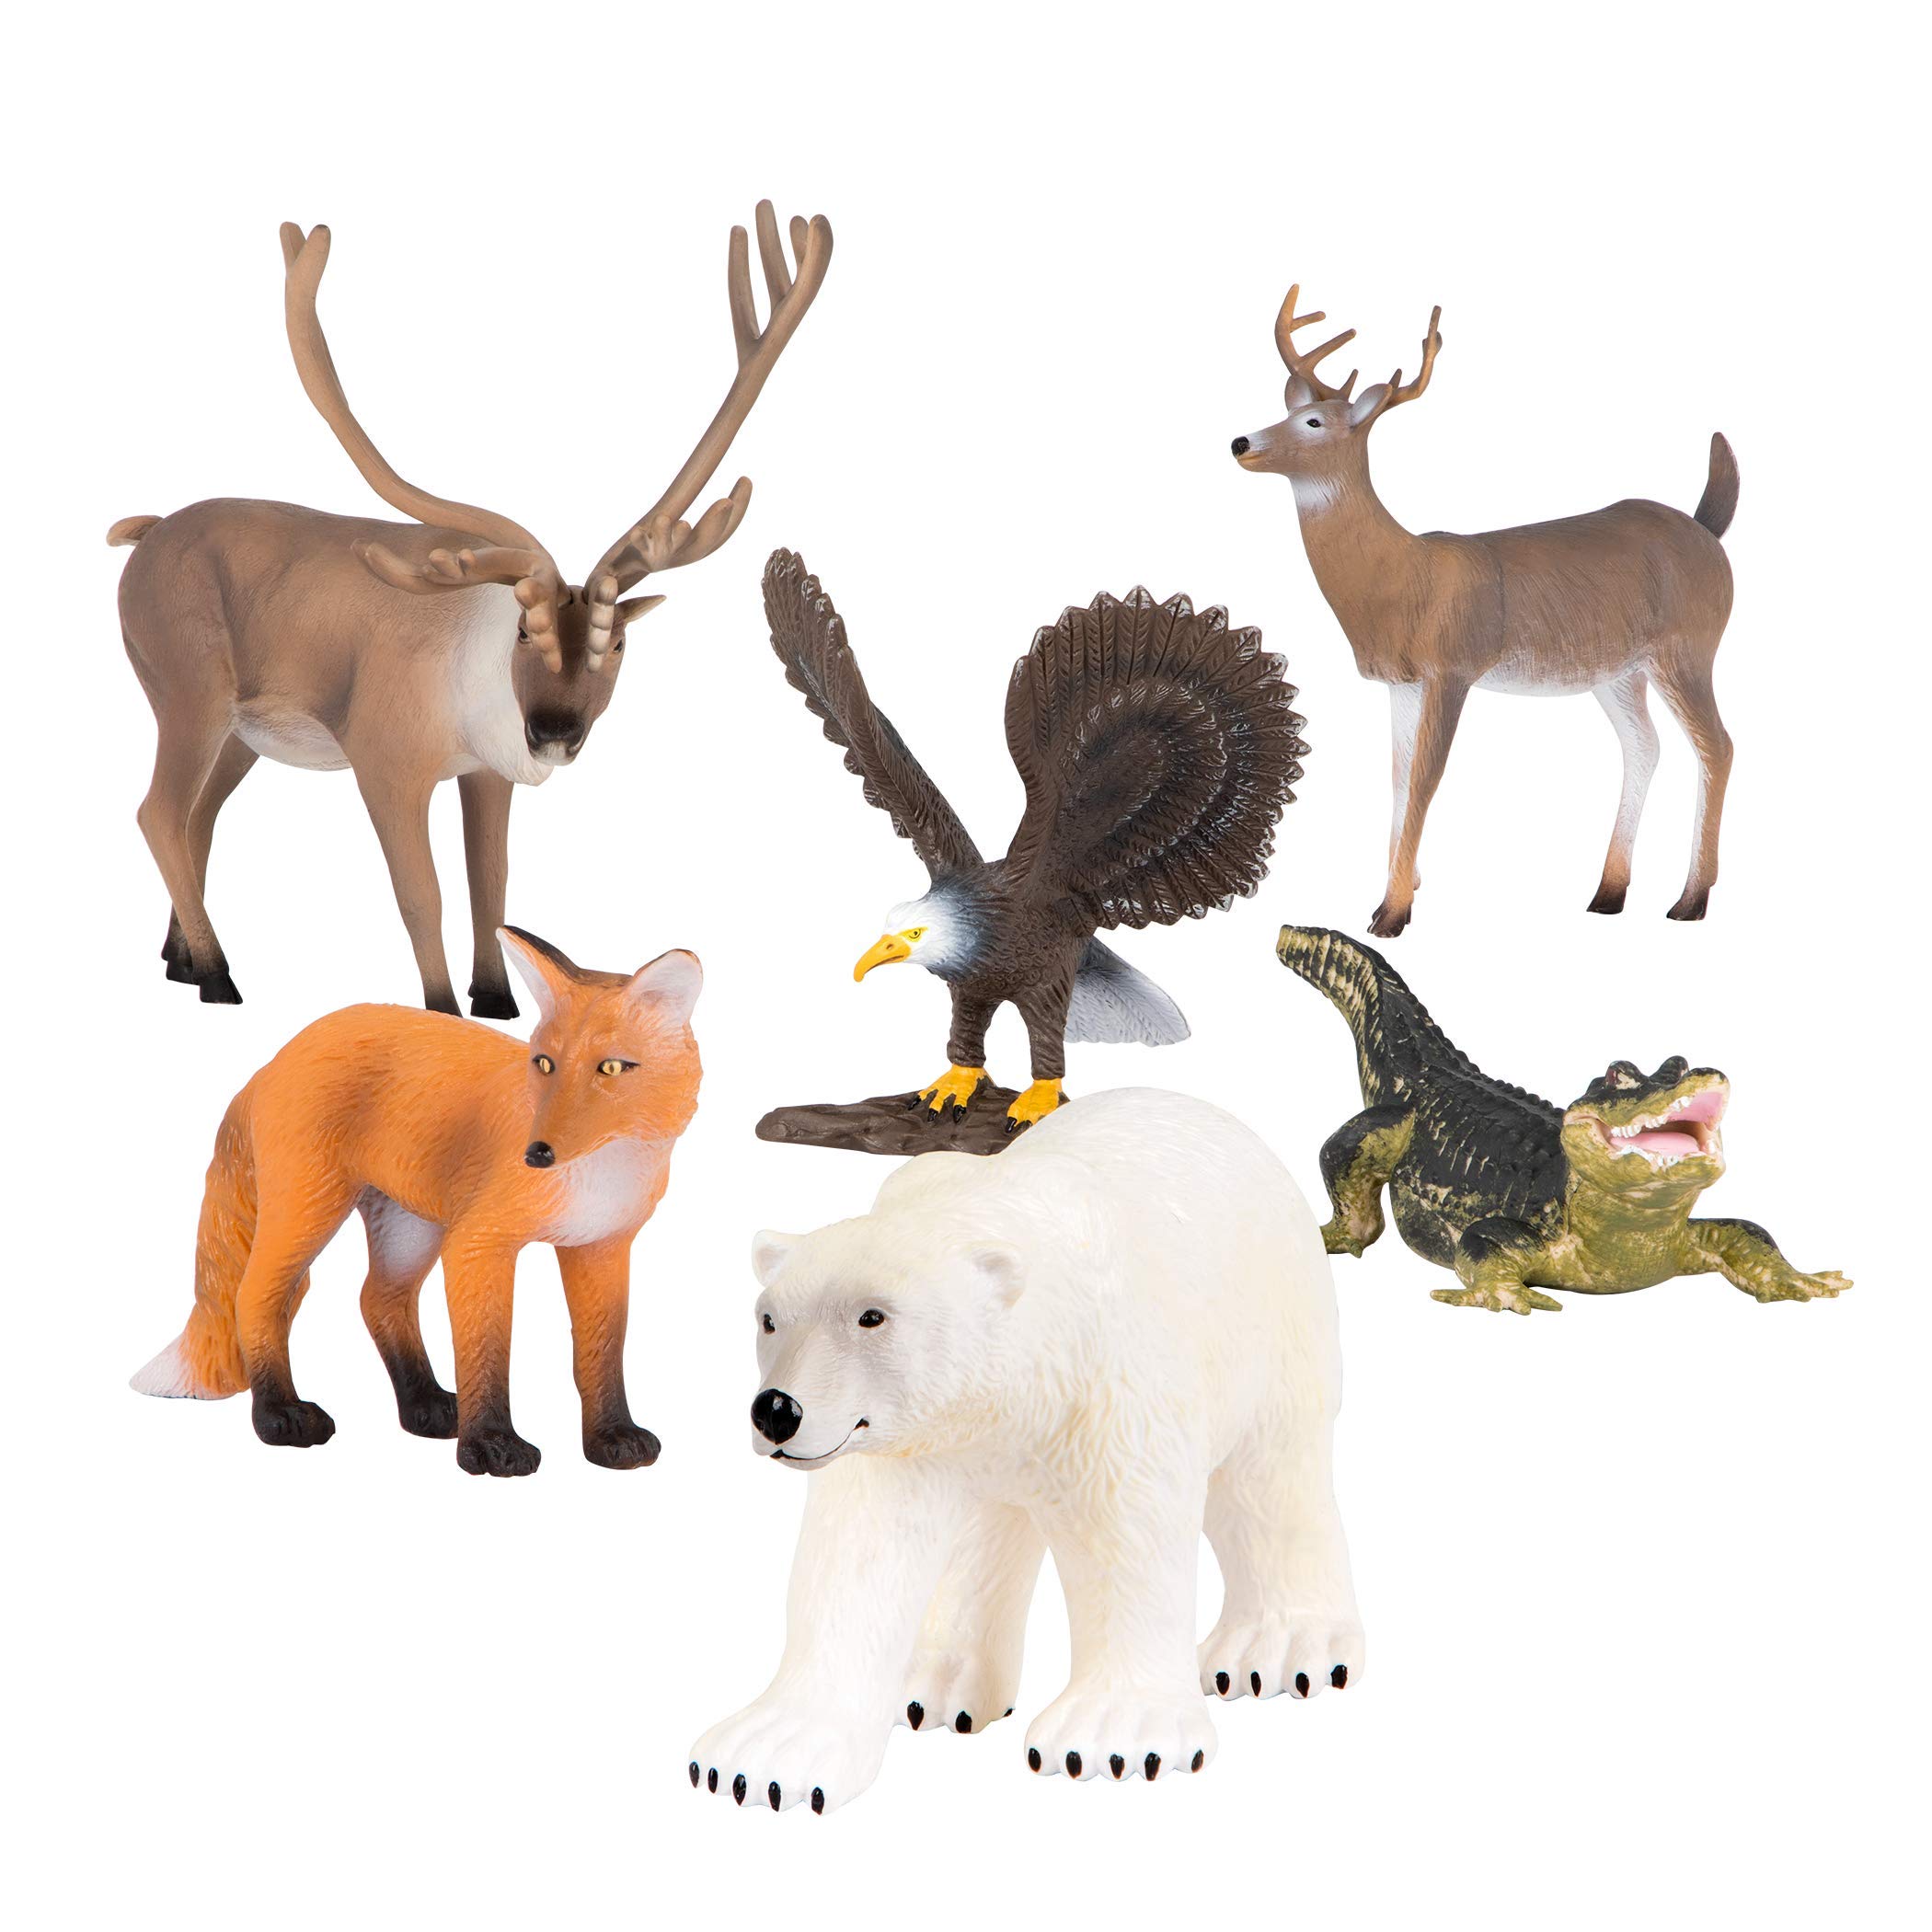 Terra 動物フィギュア キツネ 白熊 ワニ 鹿 ワシ トナカイのおもちゃ 6体セット 北米に生息する動物たち 3歳~ 正規品 AN6048BZ